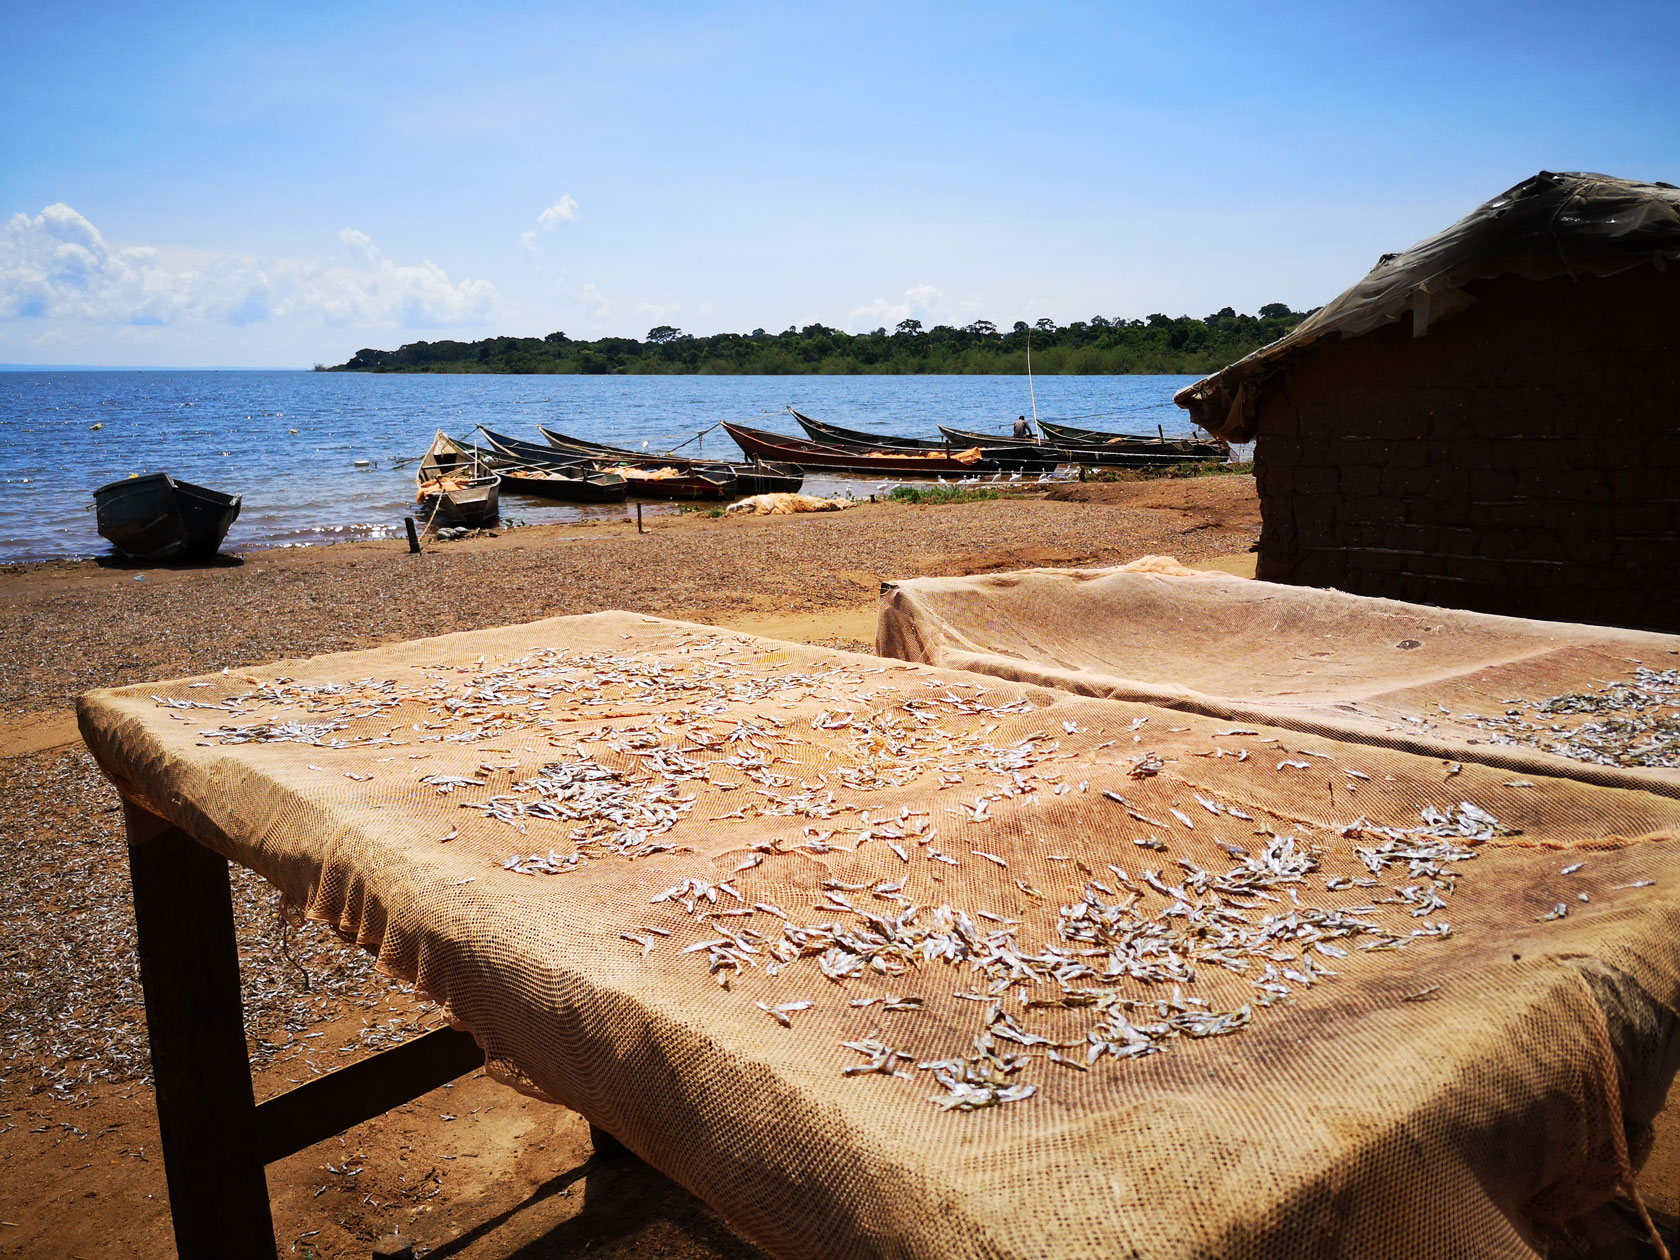 Fischernetze am Ufer des Viktoriesees in Uganda, Afrika. Silberfische im Netz.